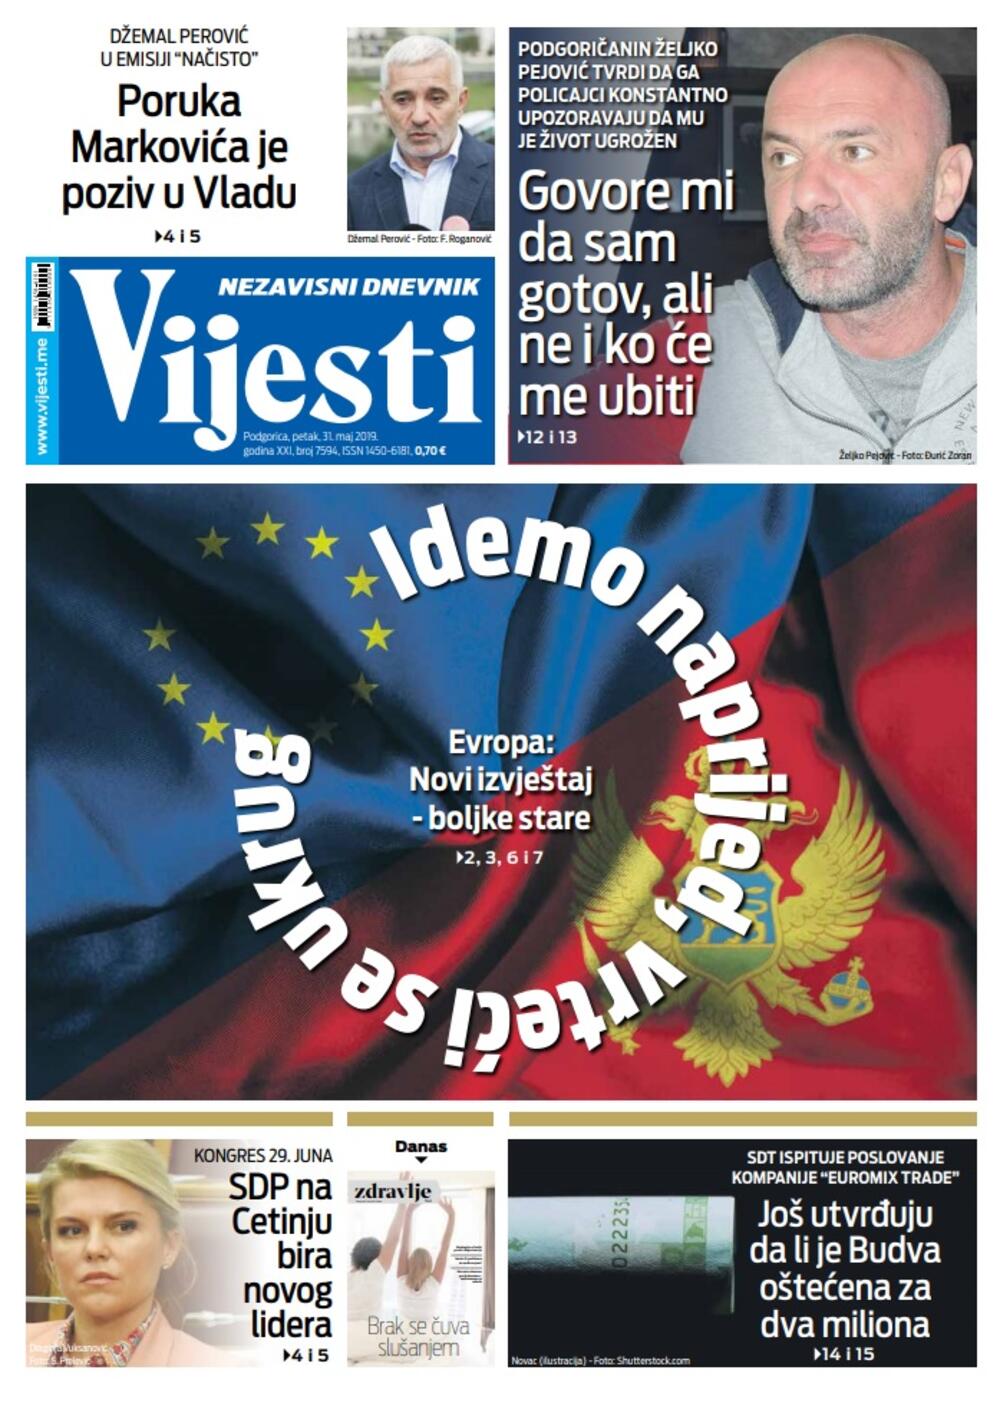 Naslovna strana "Vijesti" za 31. maj